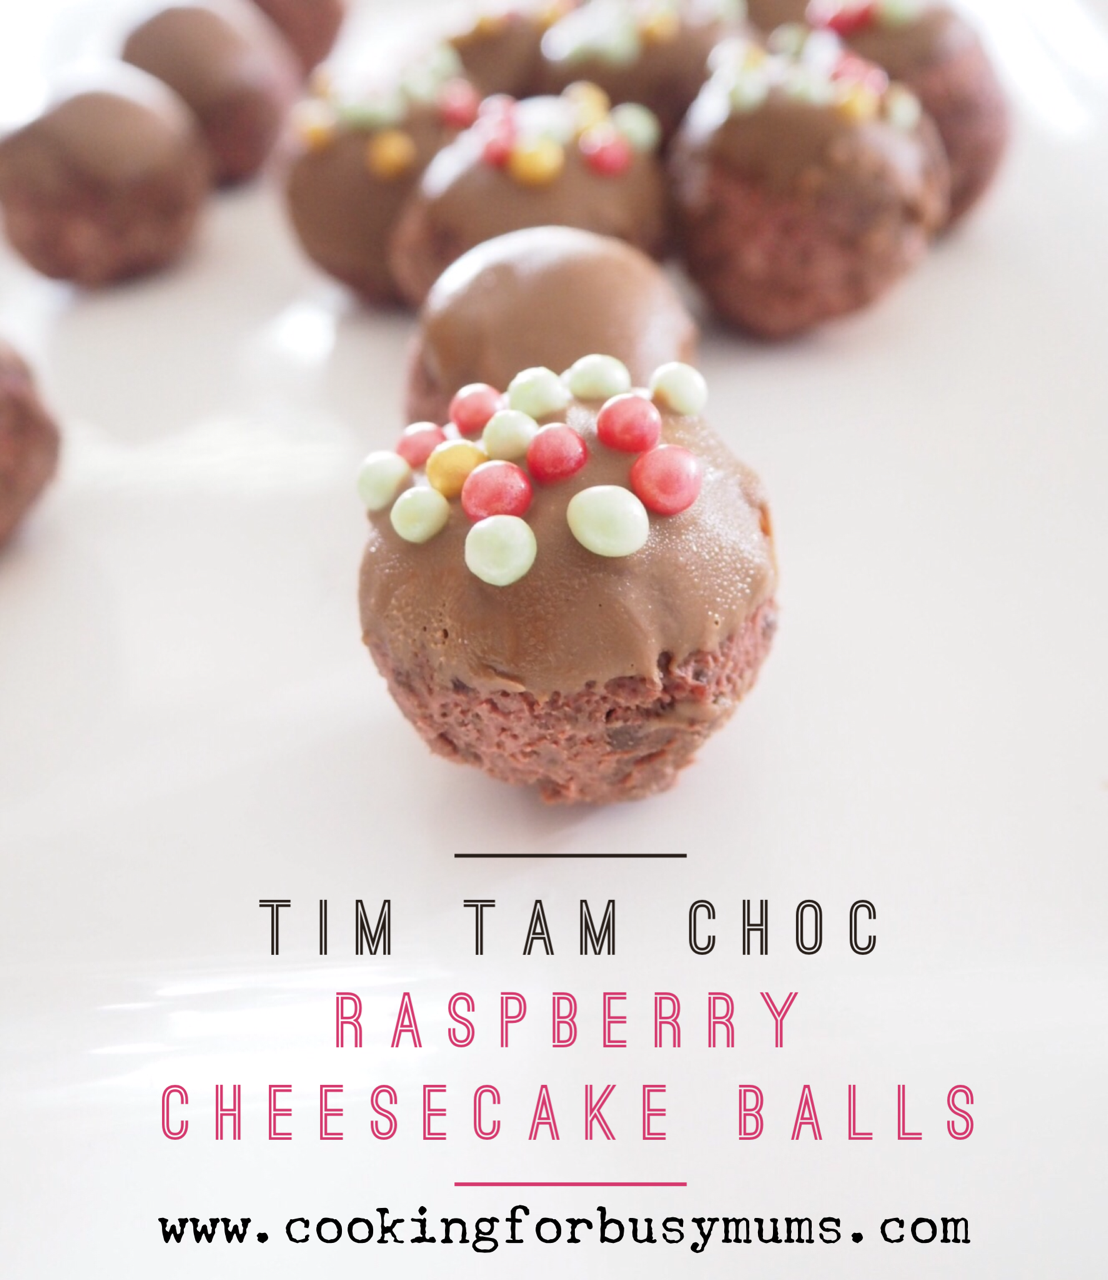 Three Ingredient Tim Tam Choc Raspberry Cheesecake Balls